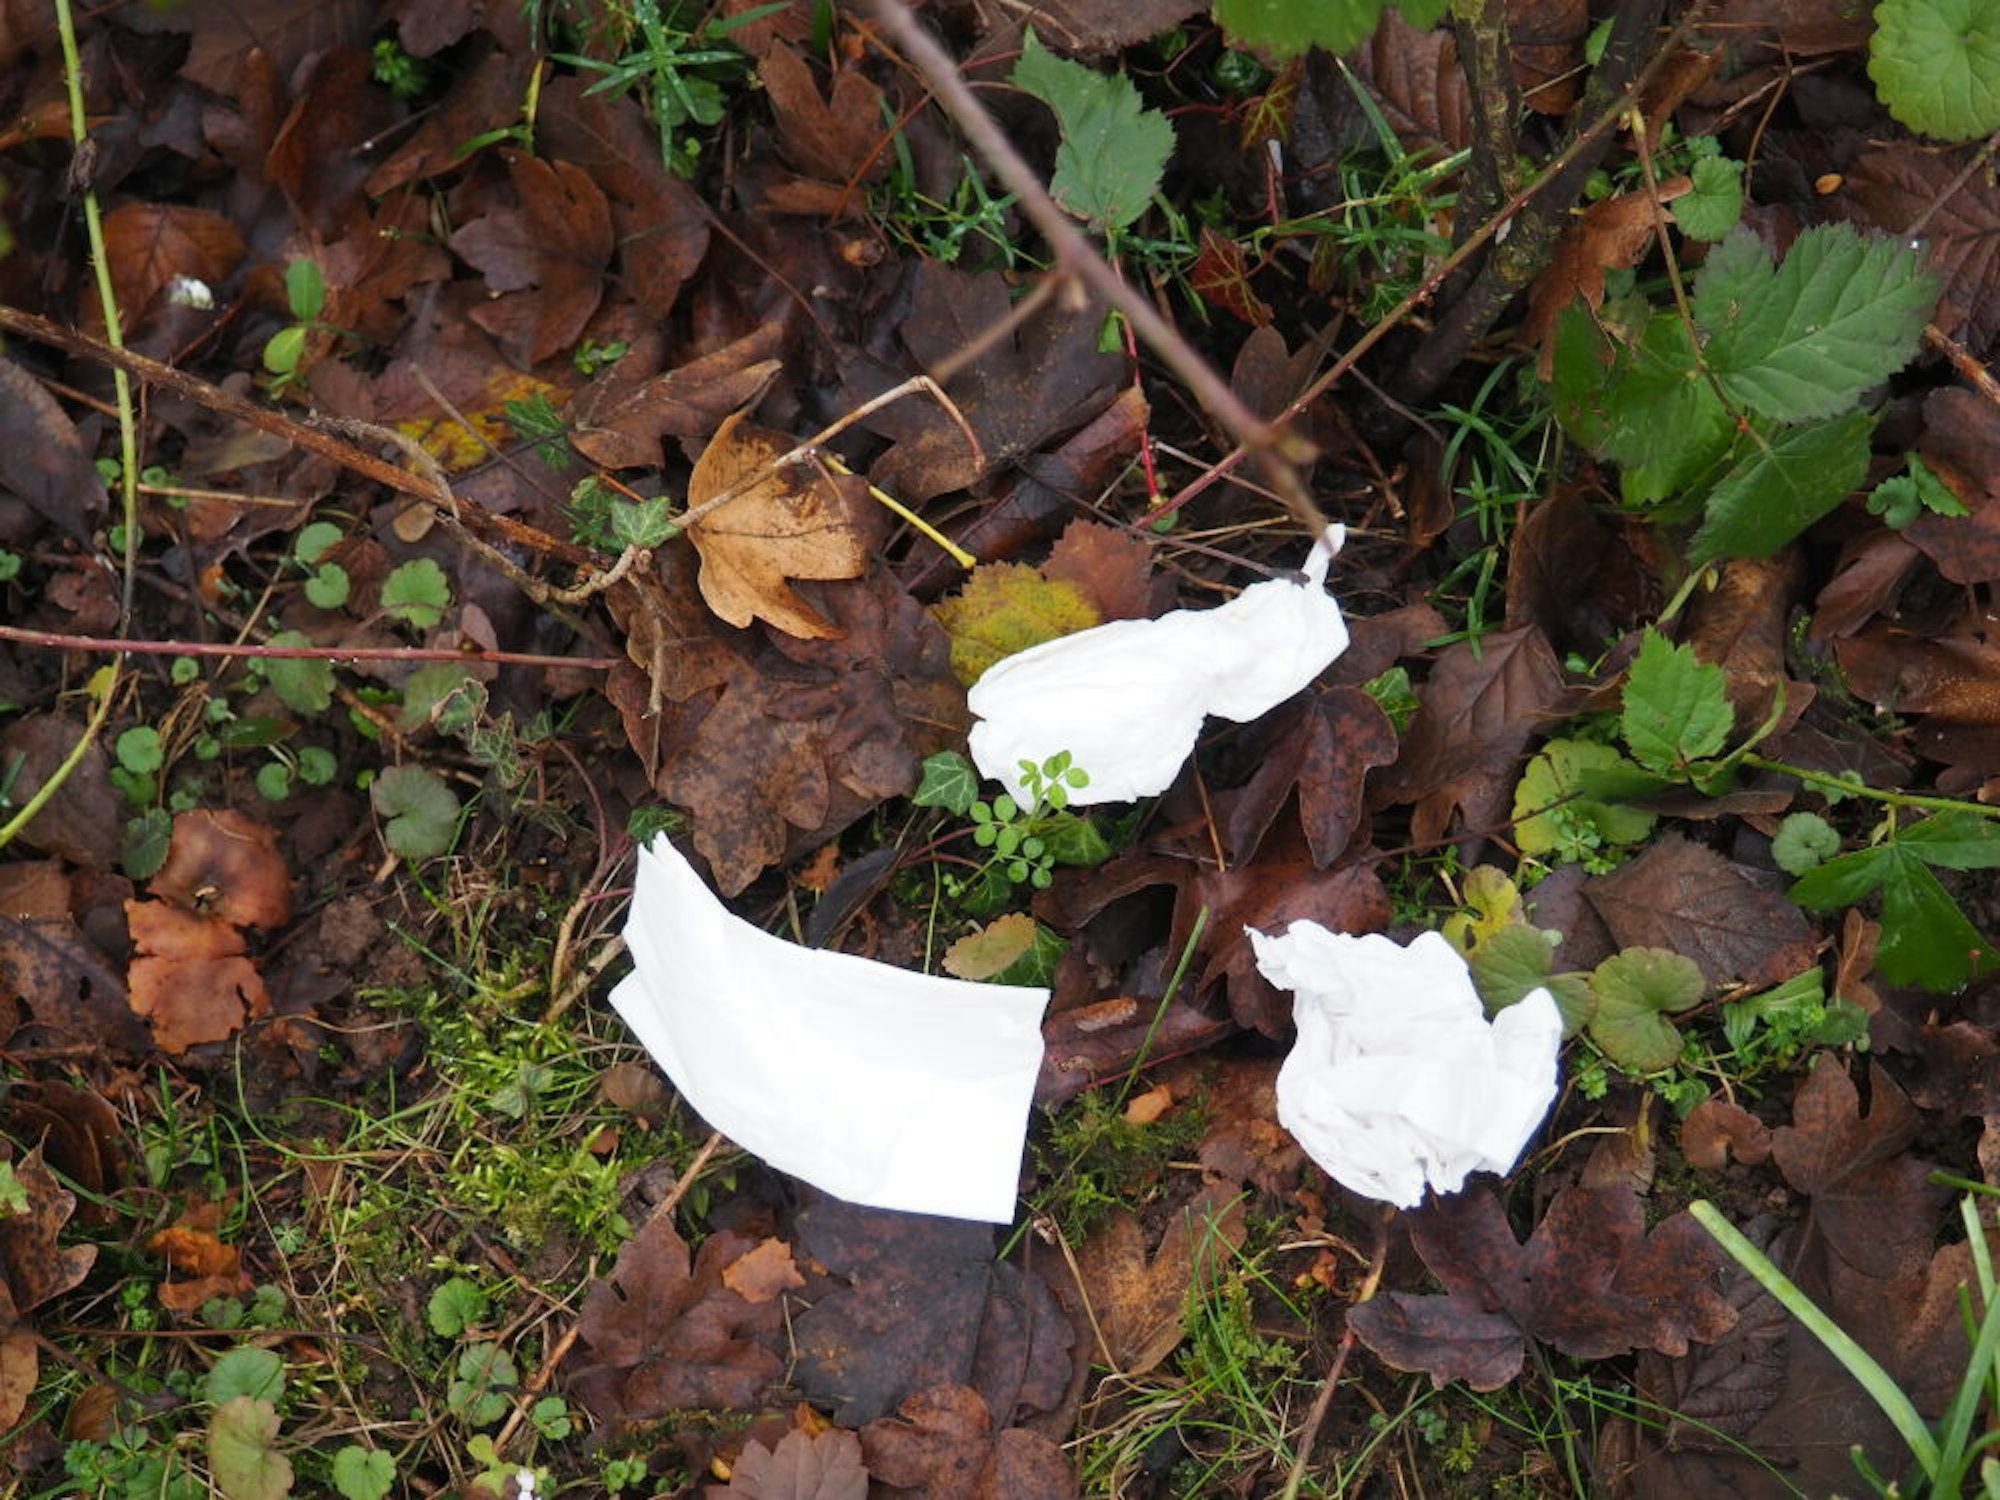 Papiertaschentücher gehören zu den häufigsten Hinterlassenschaften in der Natur. Sie verrotten nur langsam.